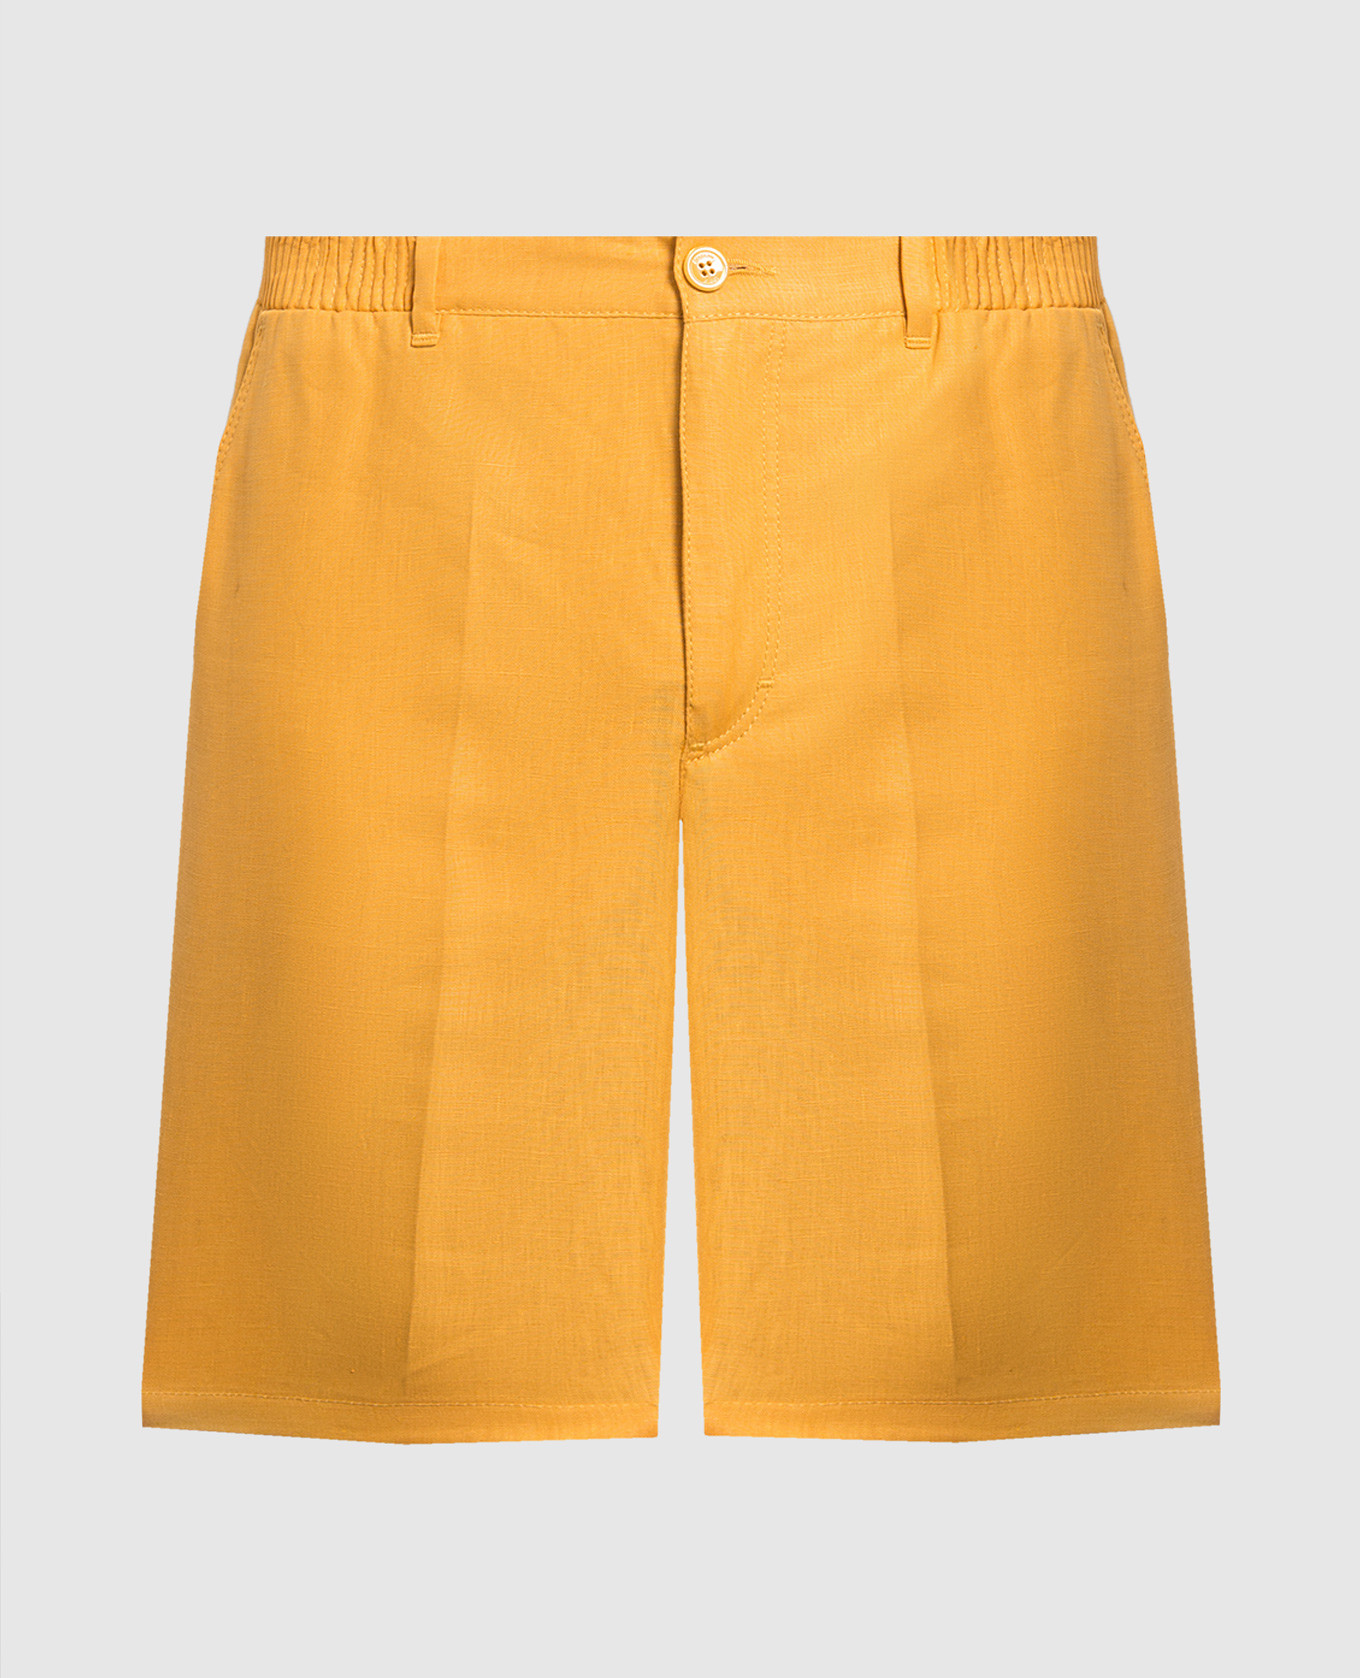 Желтые шорты из льна с вышивкой логотипа